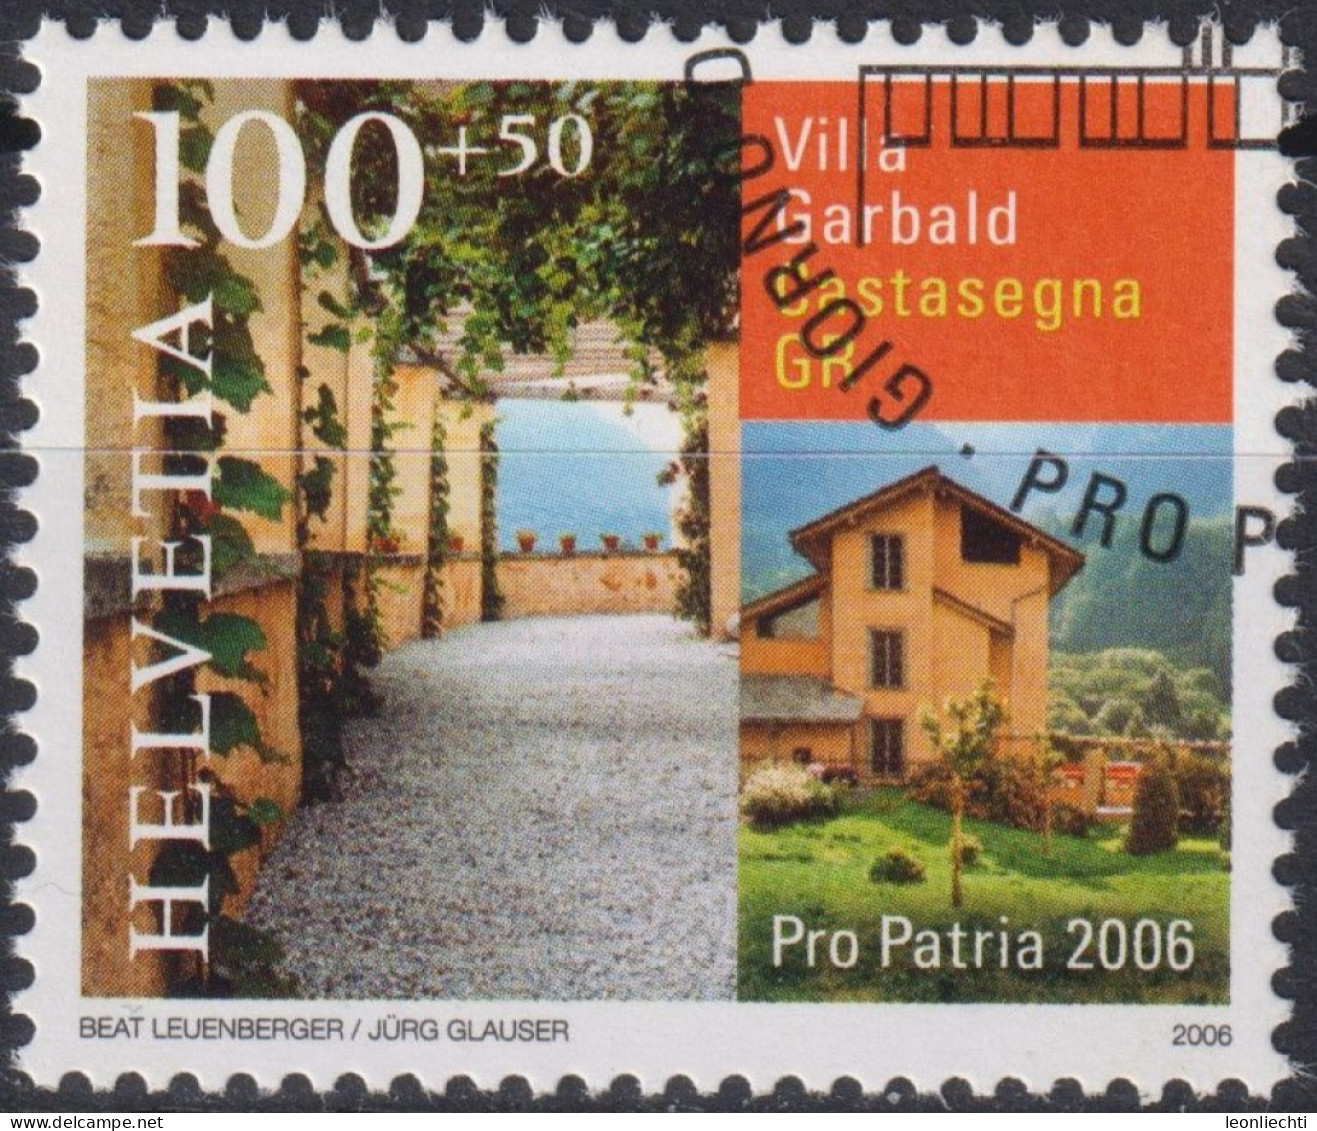 2006 Schweiz Pro Patria, Villa Garbald, Castasegna GR ⵙ Zum:CH B294, Mi:CH 1963, Yt:CH 1890 - Gebraucht